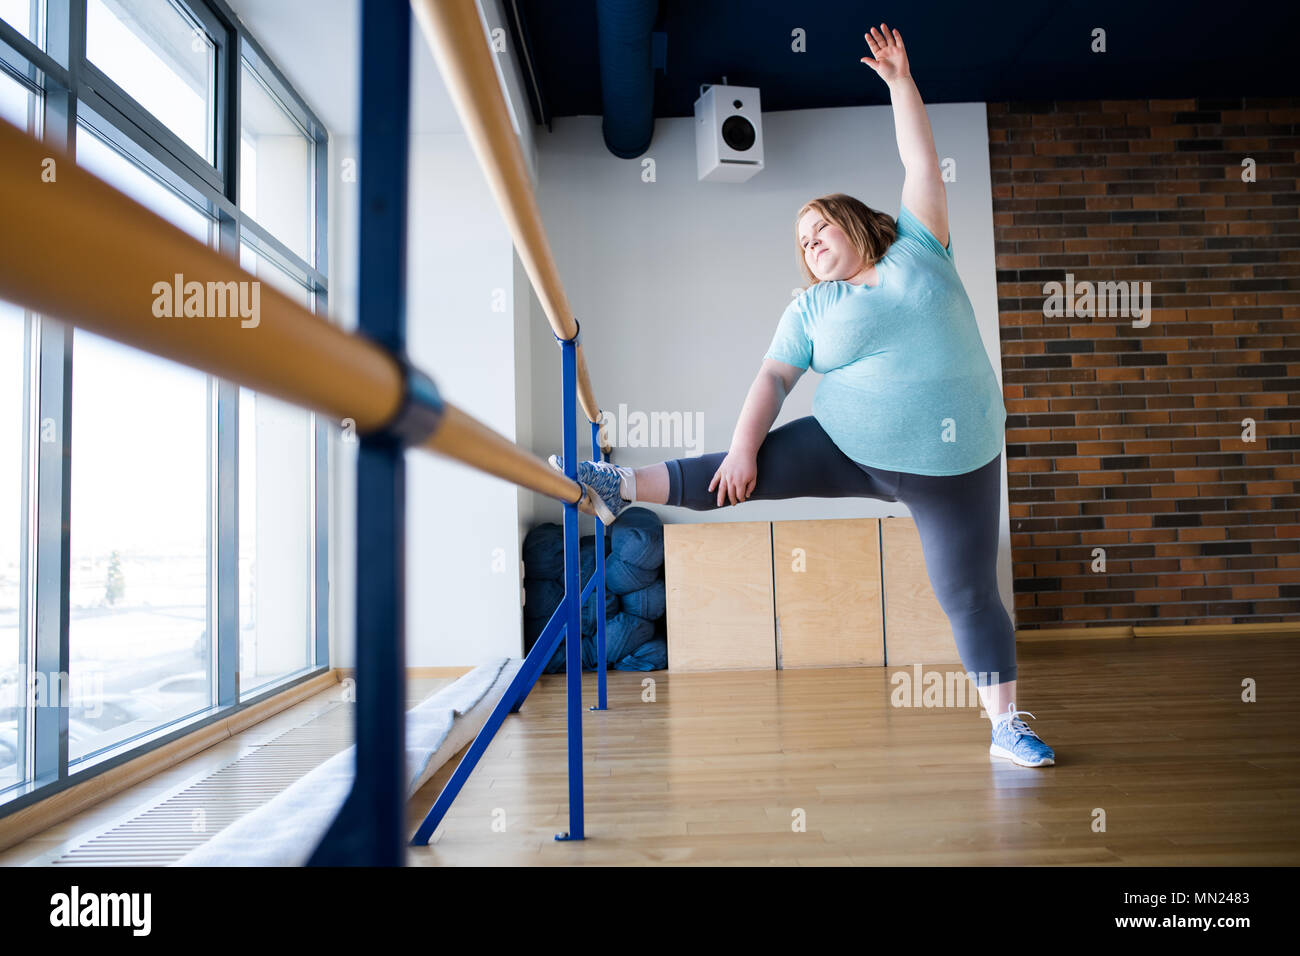 Portrait de jeune femme obèse faisant des étirements au ballet présente dans la barre de gymnastique dance class, copy space Banque D'Images